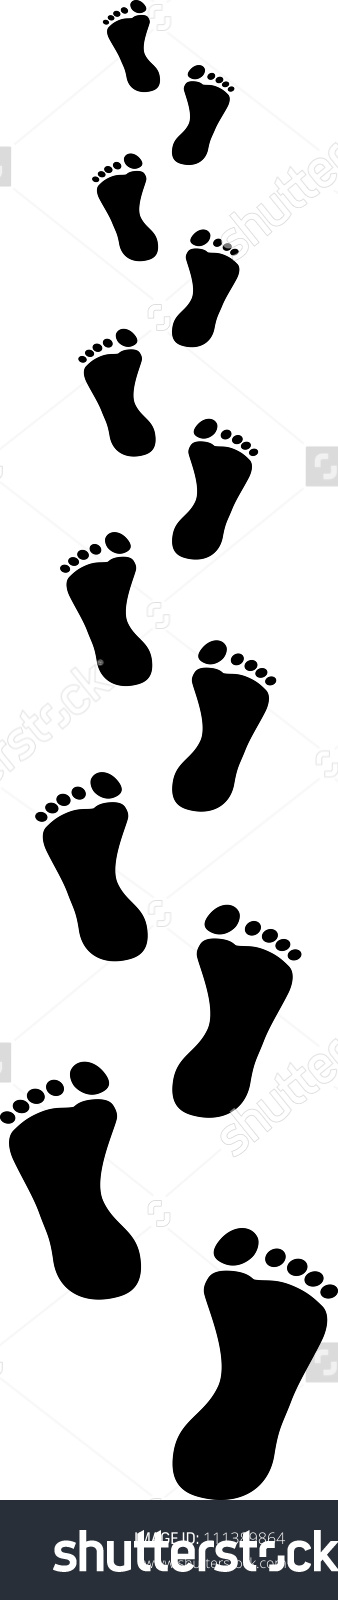 Footprints Receding Clip Art Illustration Stock Vector 111389864.